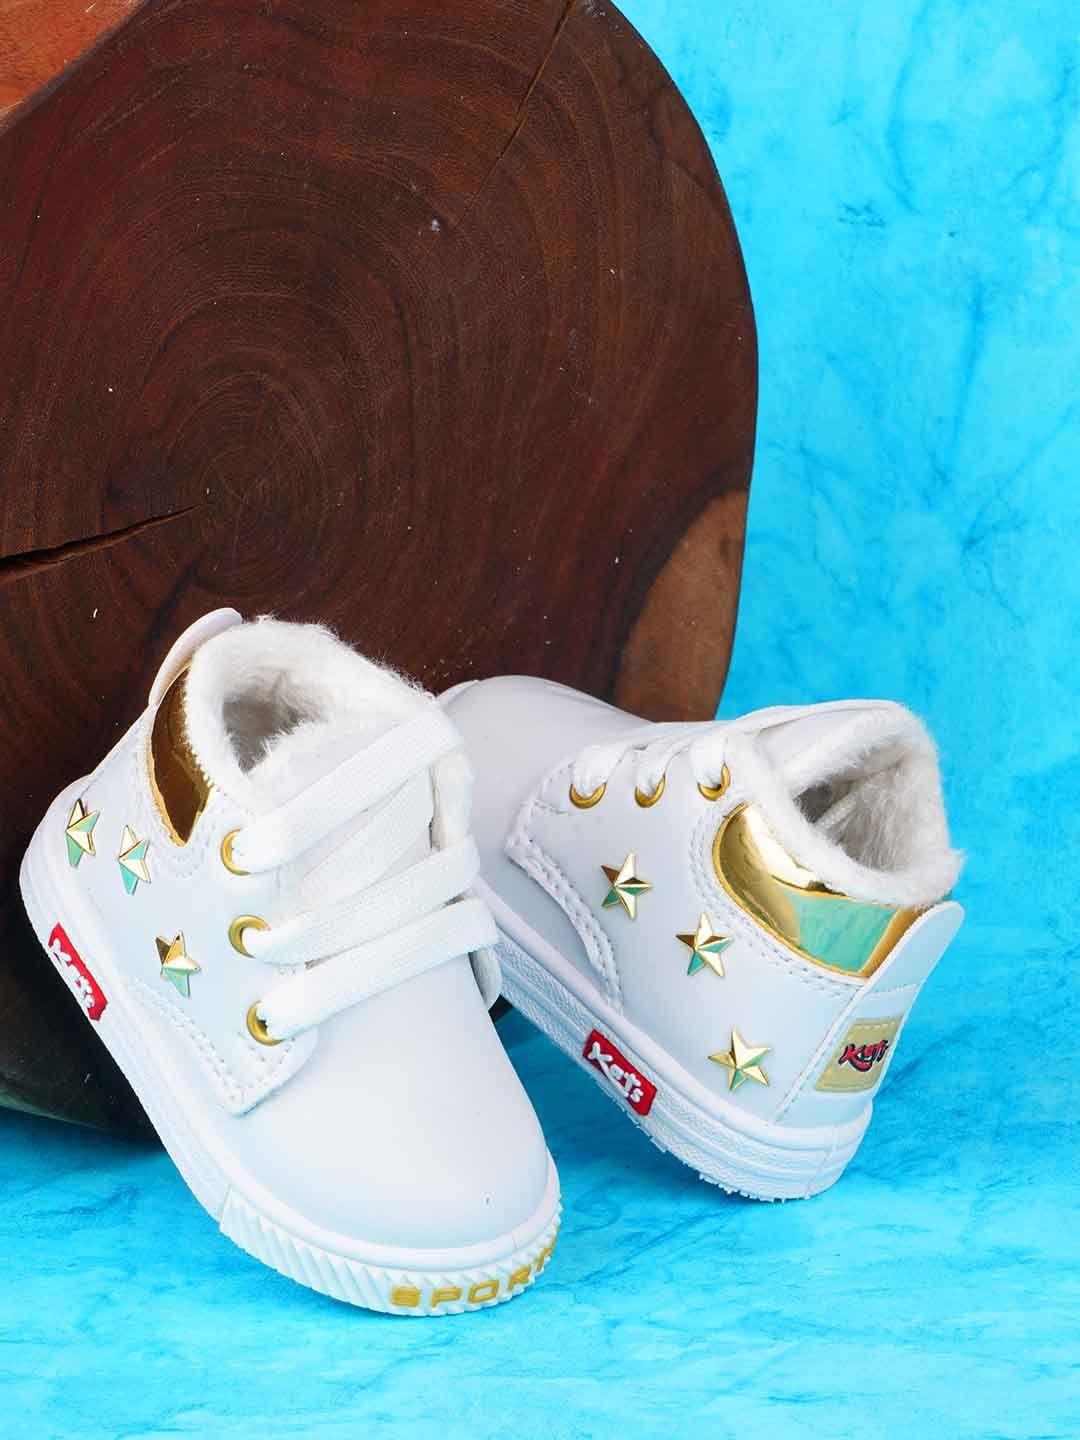 kats unisex kids printed sneakers